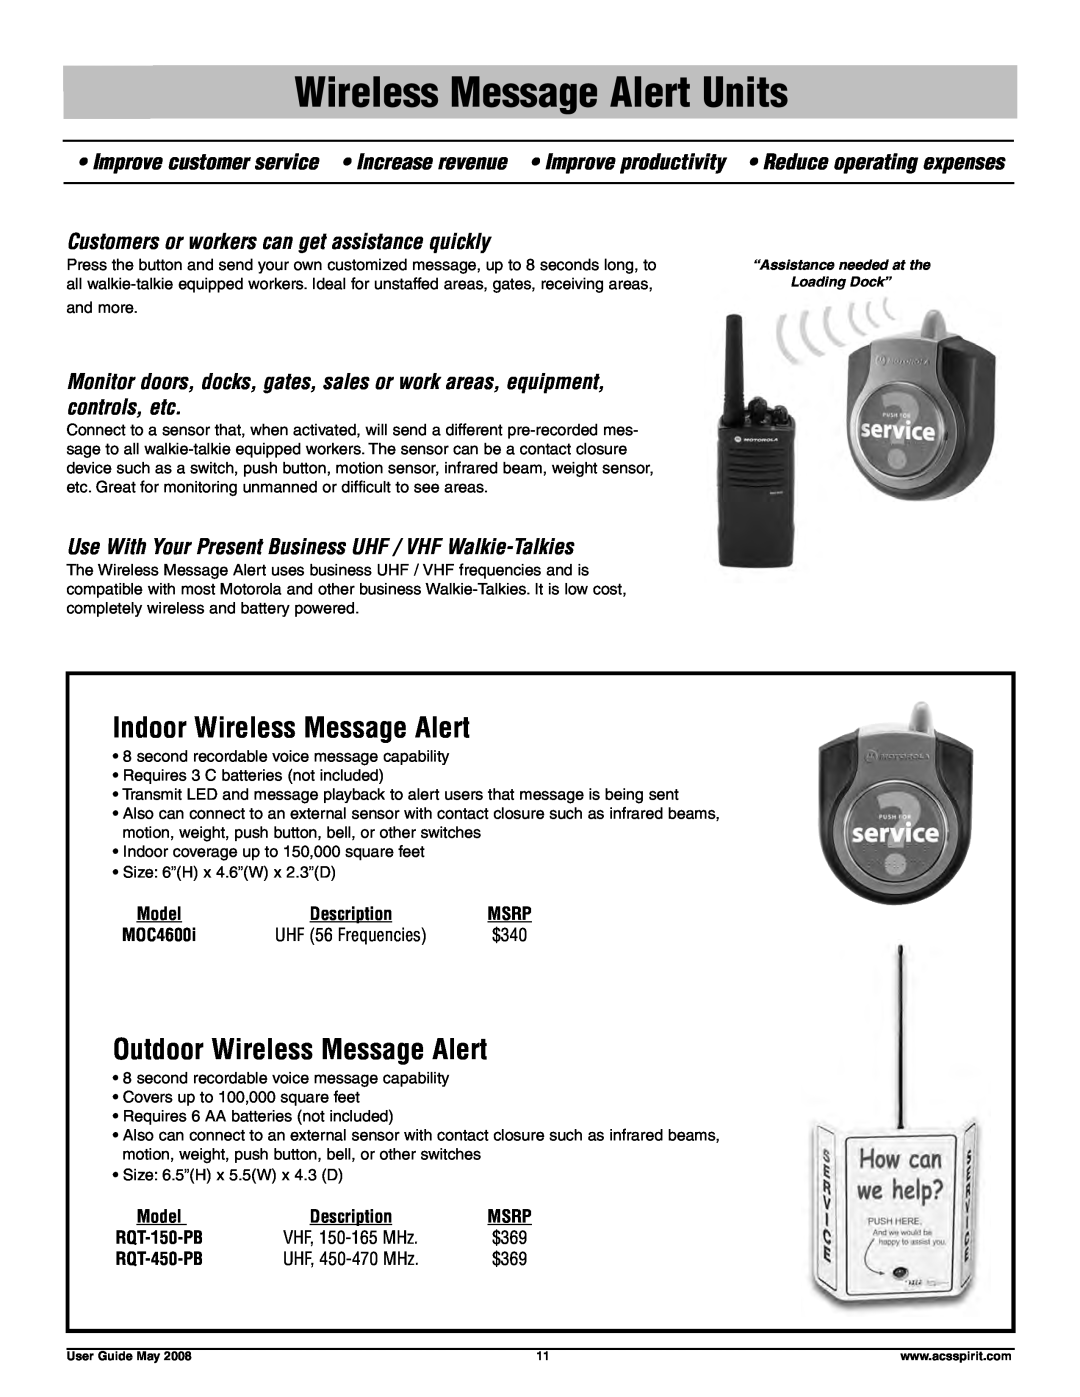 Motorola RDU4160D Wireless Message Alert Units, Indoor Wireless Message Alert, Outdoor Wireless Message Alert, $340, $369 